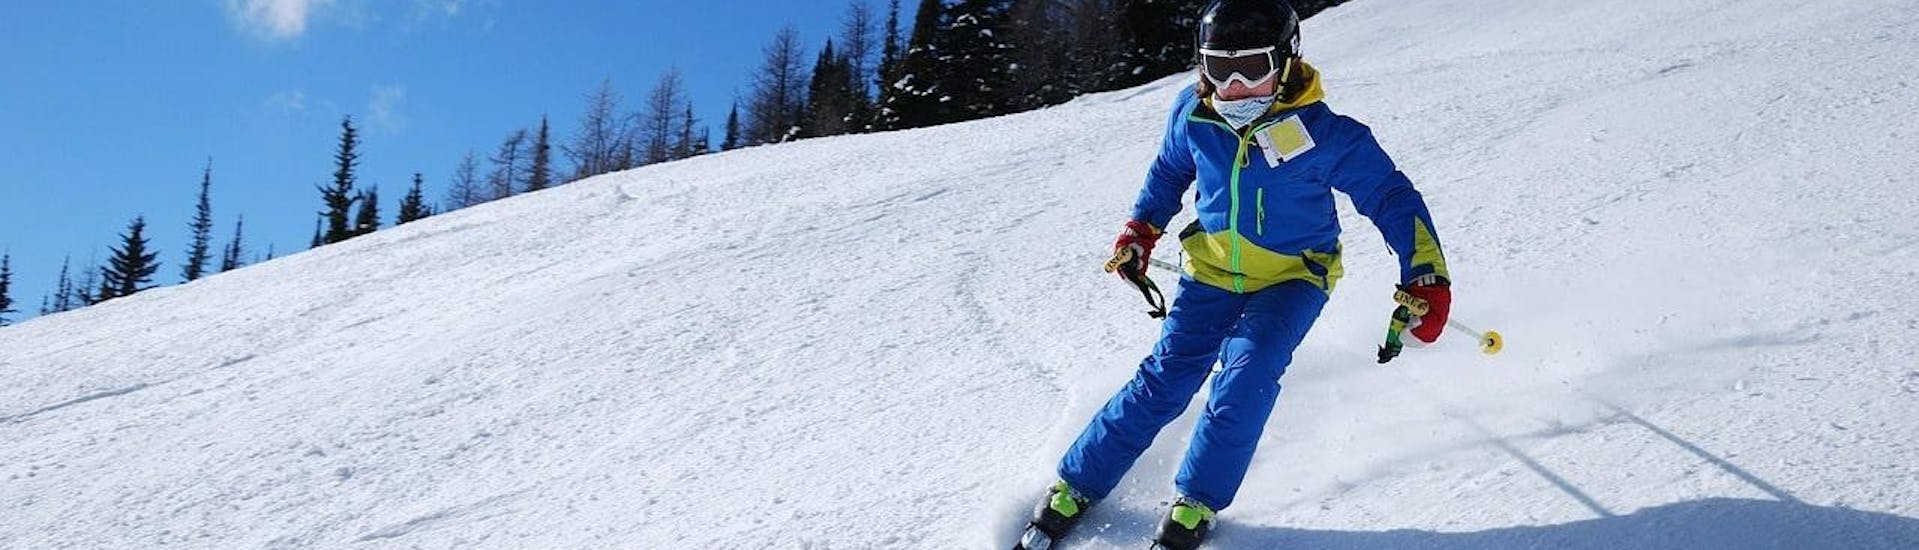 Un skieur descend une piste avec assurance pendant son Cours particulier de ski pour Enfants - Vacances avec l'école de ski Moonshot La Bresse.